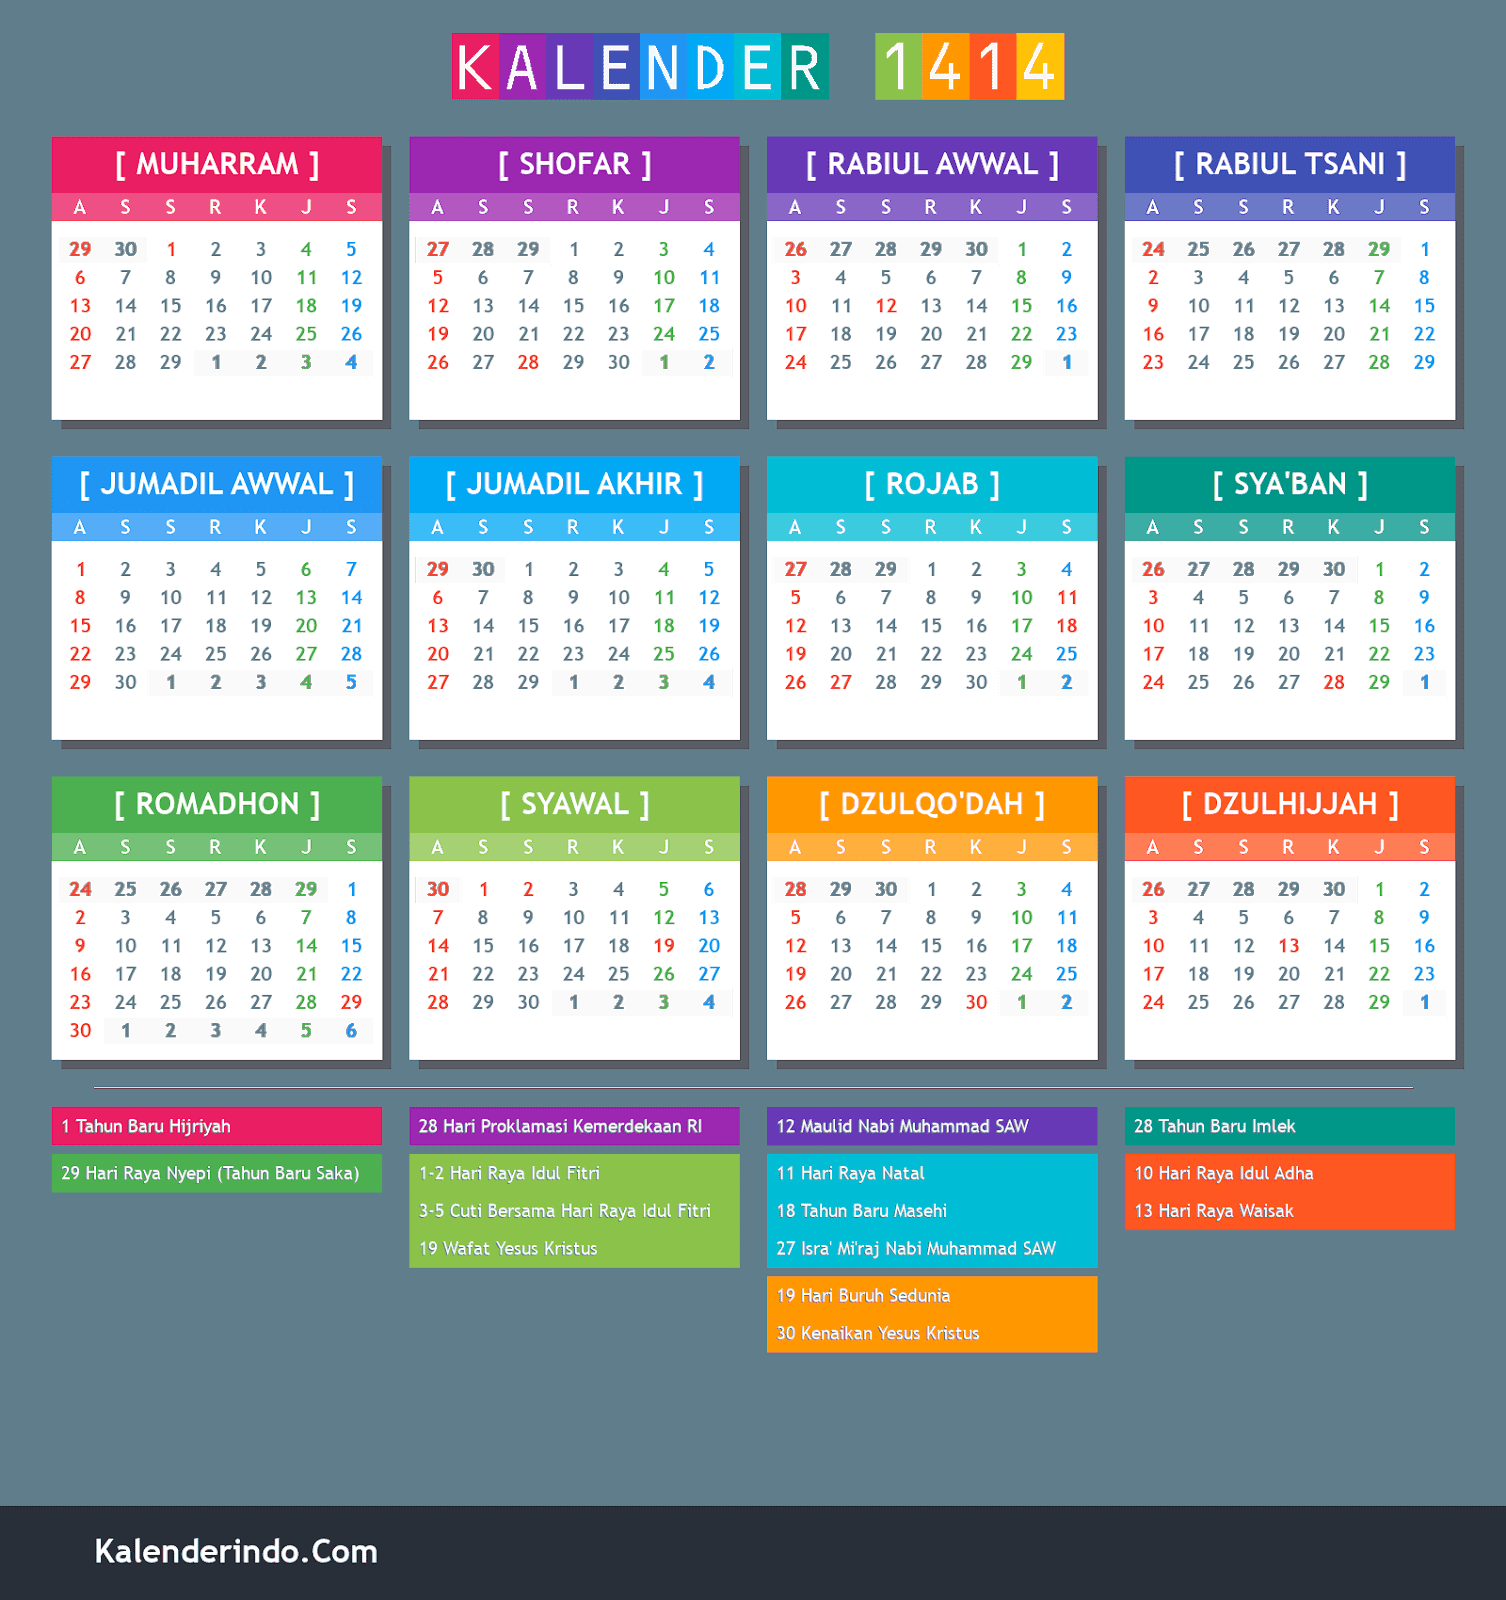 Kalender Hijriyah Online 1414